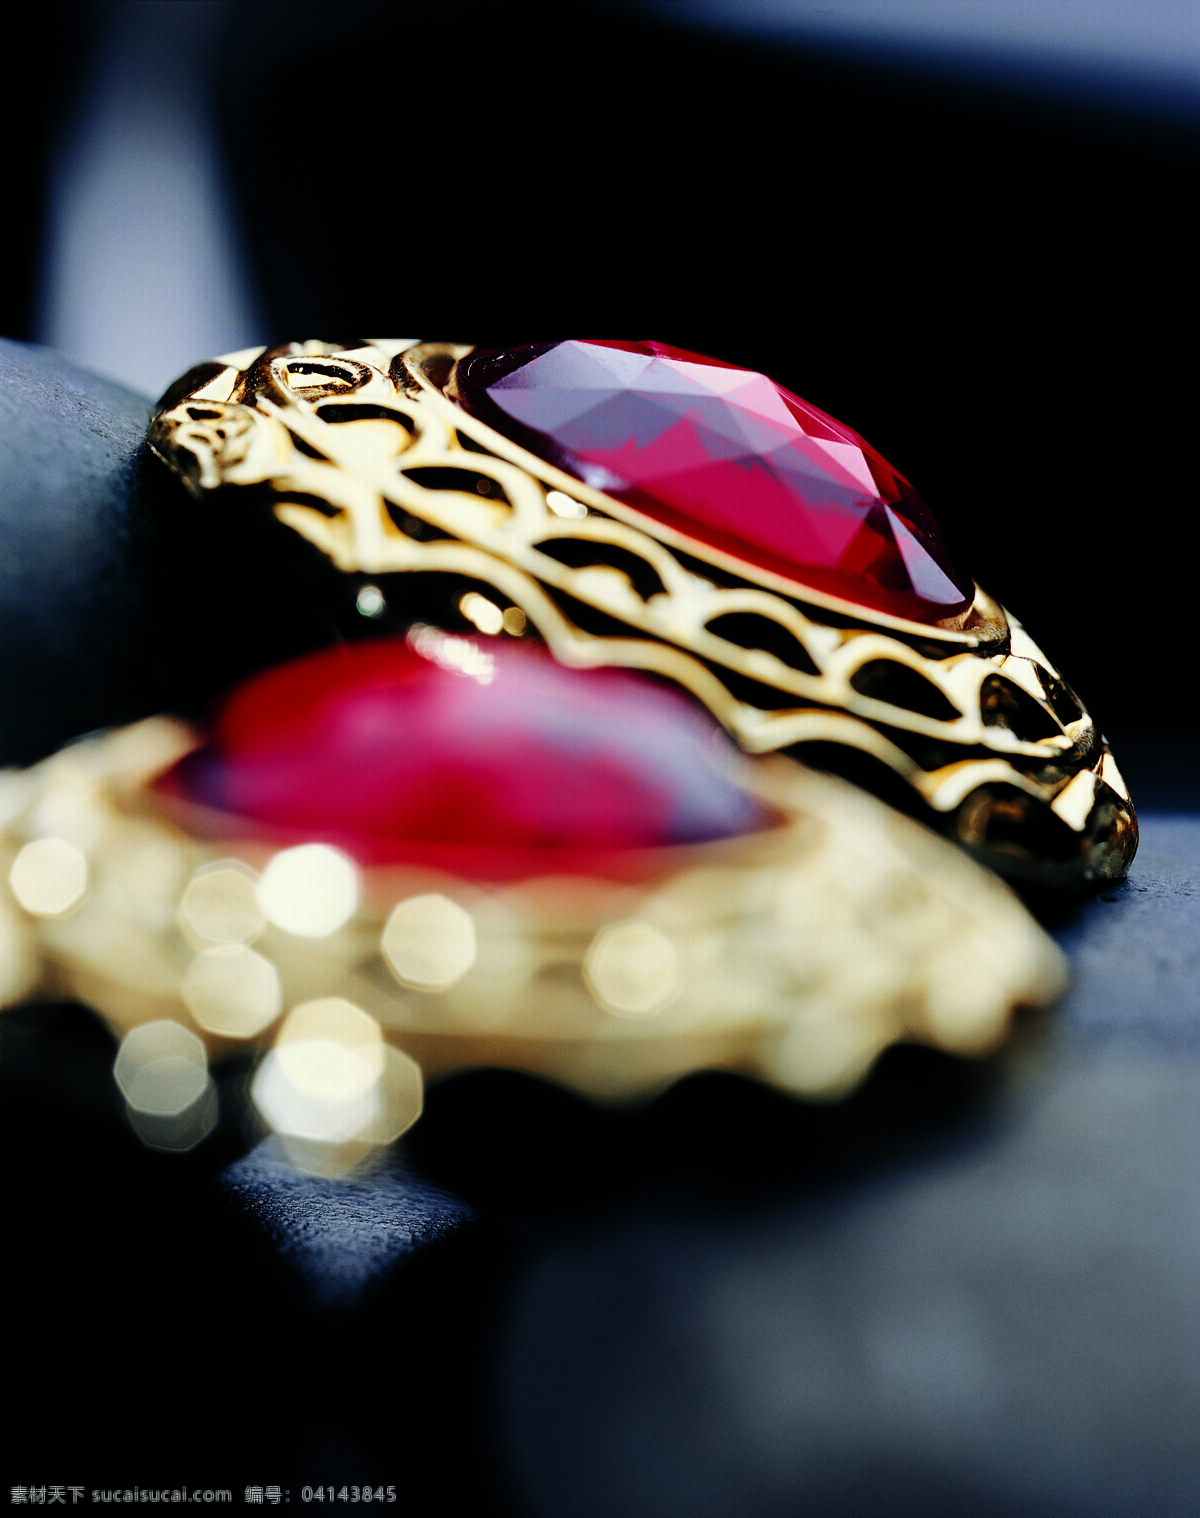 红宝石 毂计夭南略 淘宝素材 其他淘宝素材